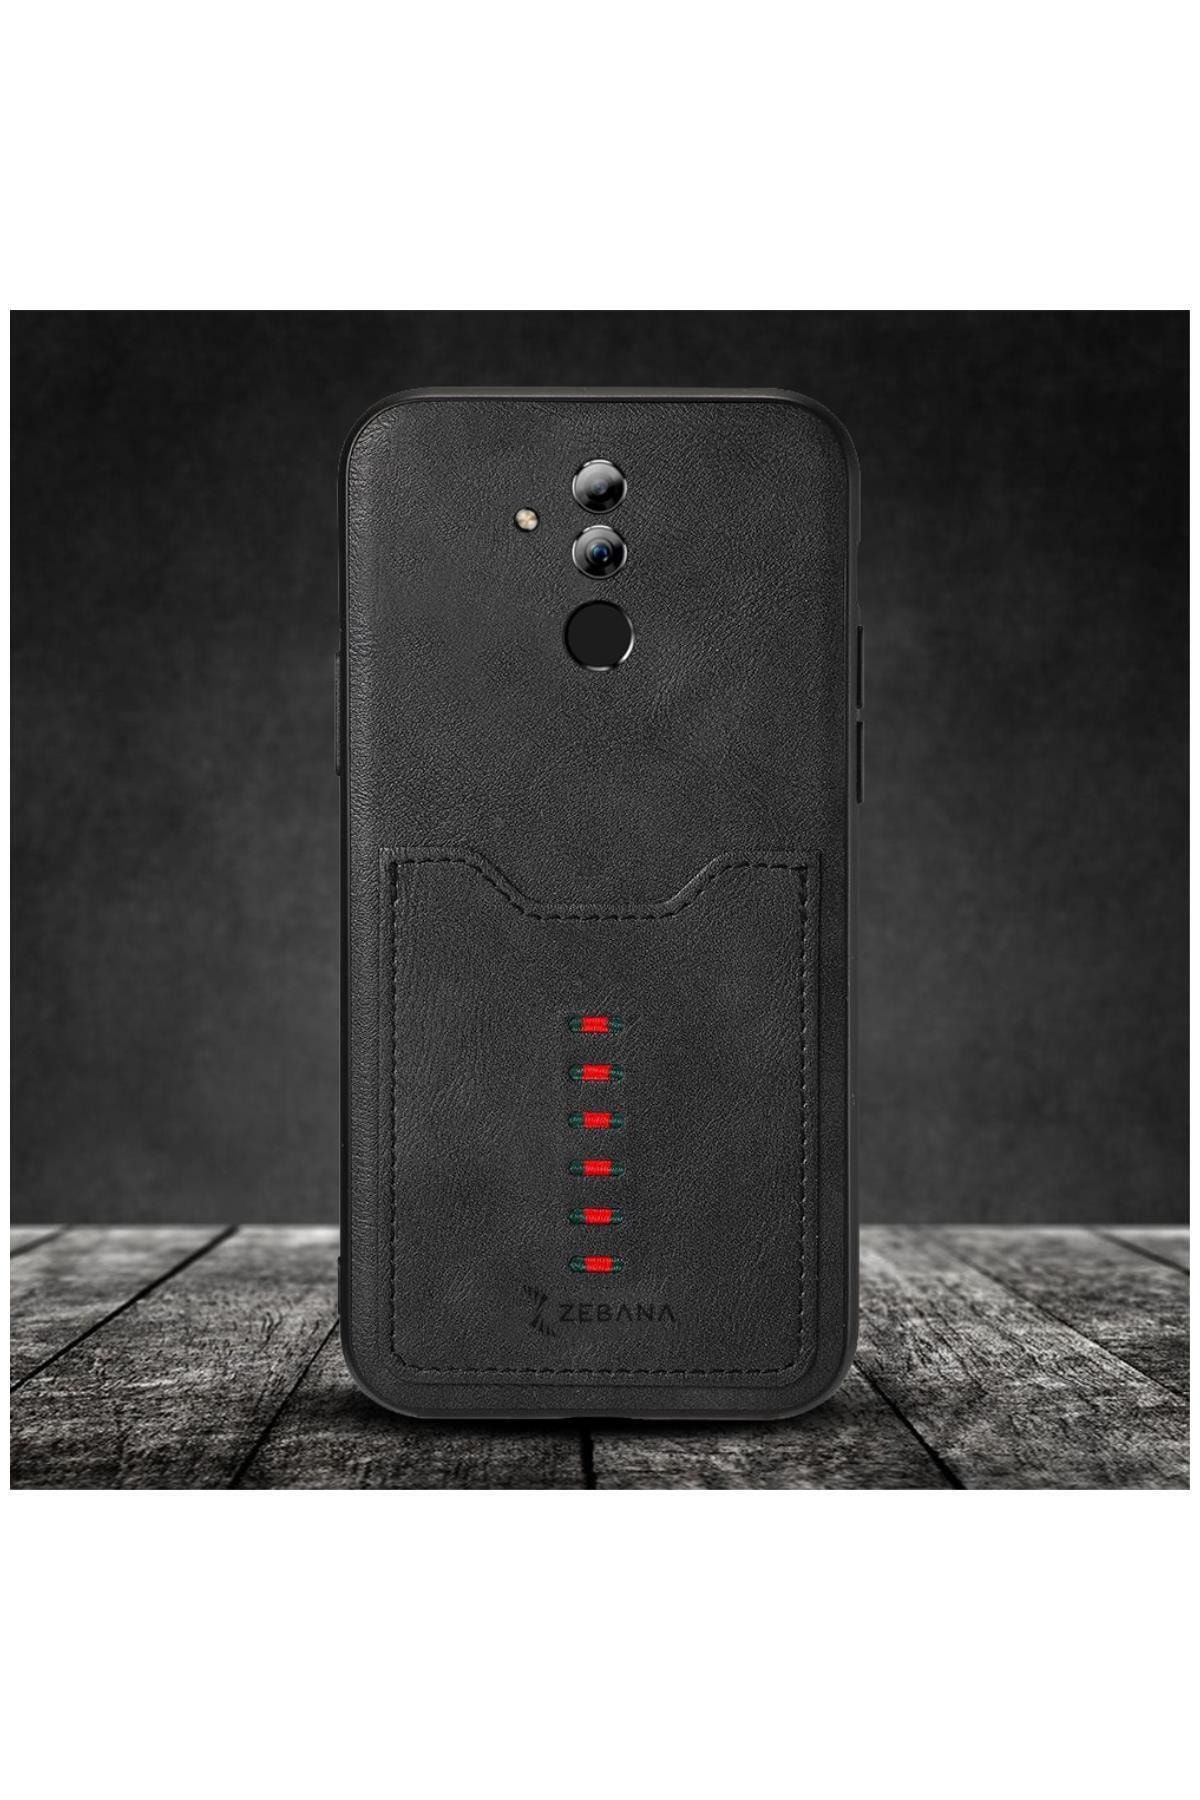 Dara Aksesuar Huawei Mate 20 Lite Uyumlu Telefon Kılıfı Zebana Chic Cepli Kılıf Siyah